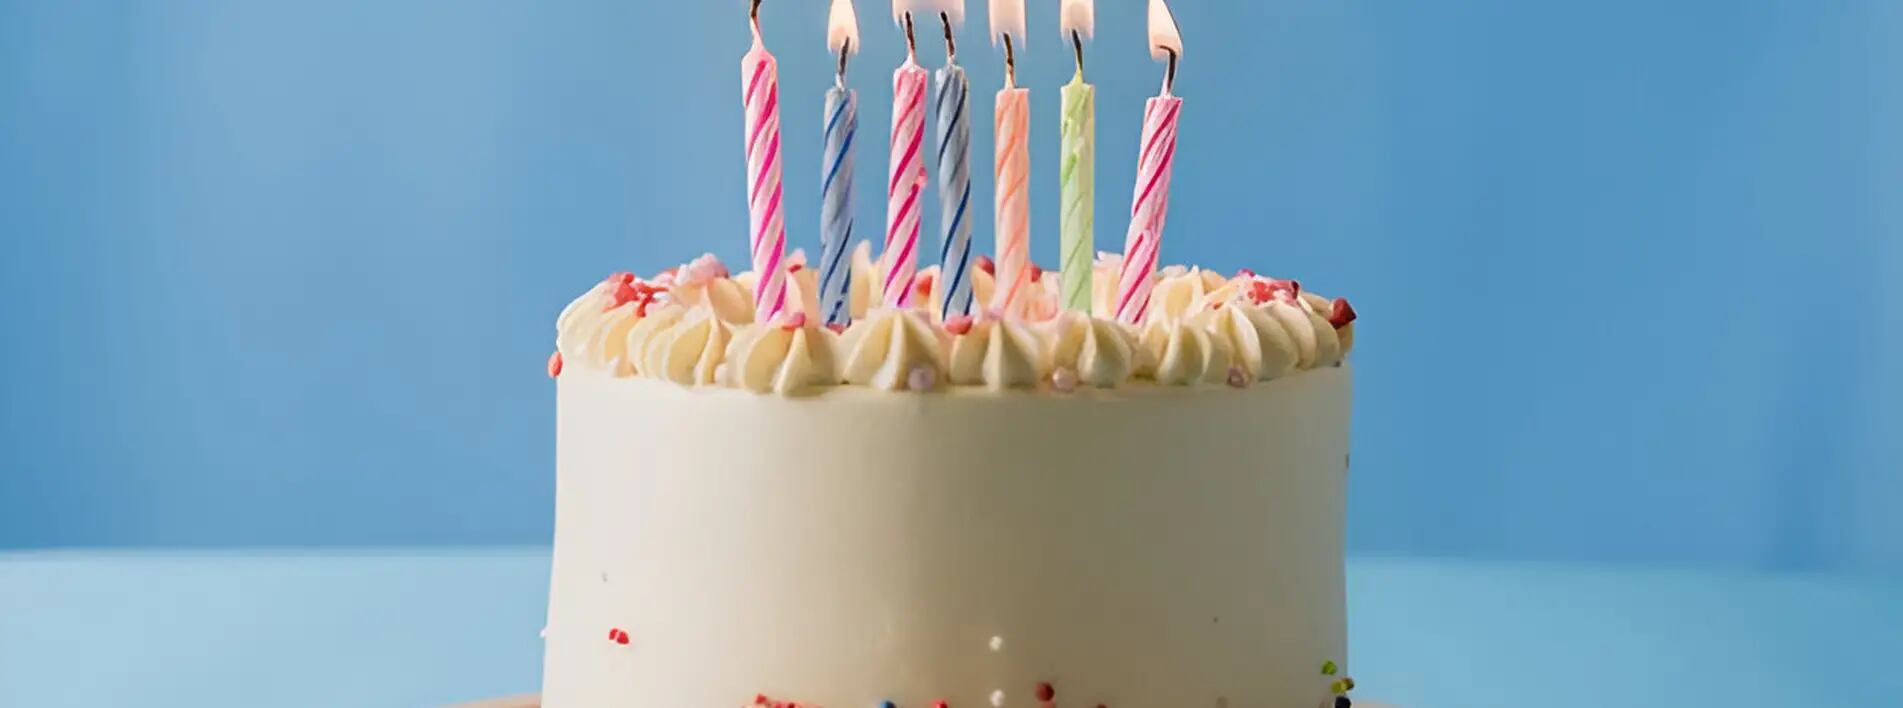 El curioso origen de soplar velas por el cumpleaños